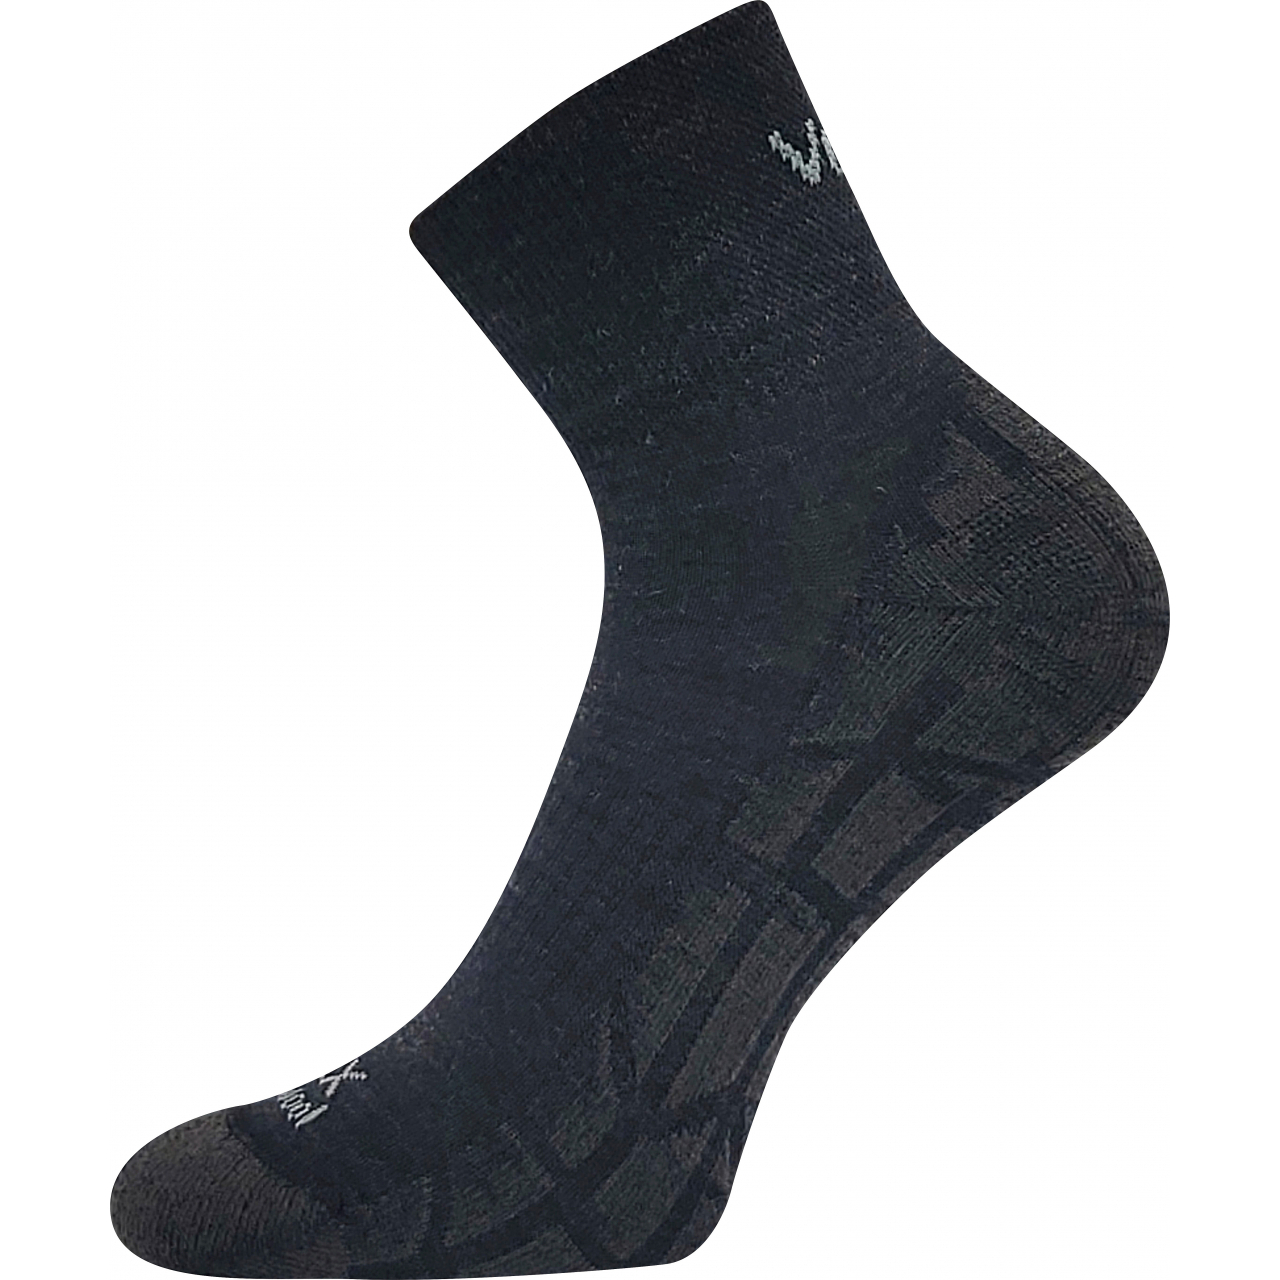 Ponožky unisex sportovní Voxx Twarix short - tmavě šedé, 39-42